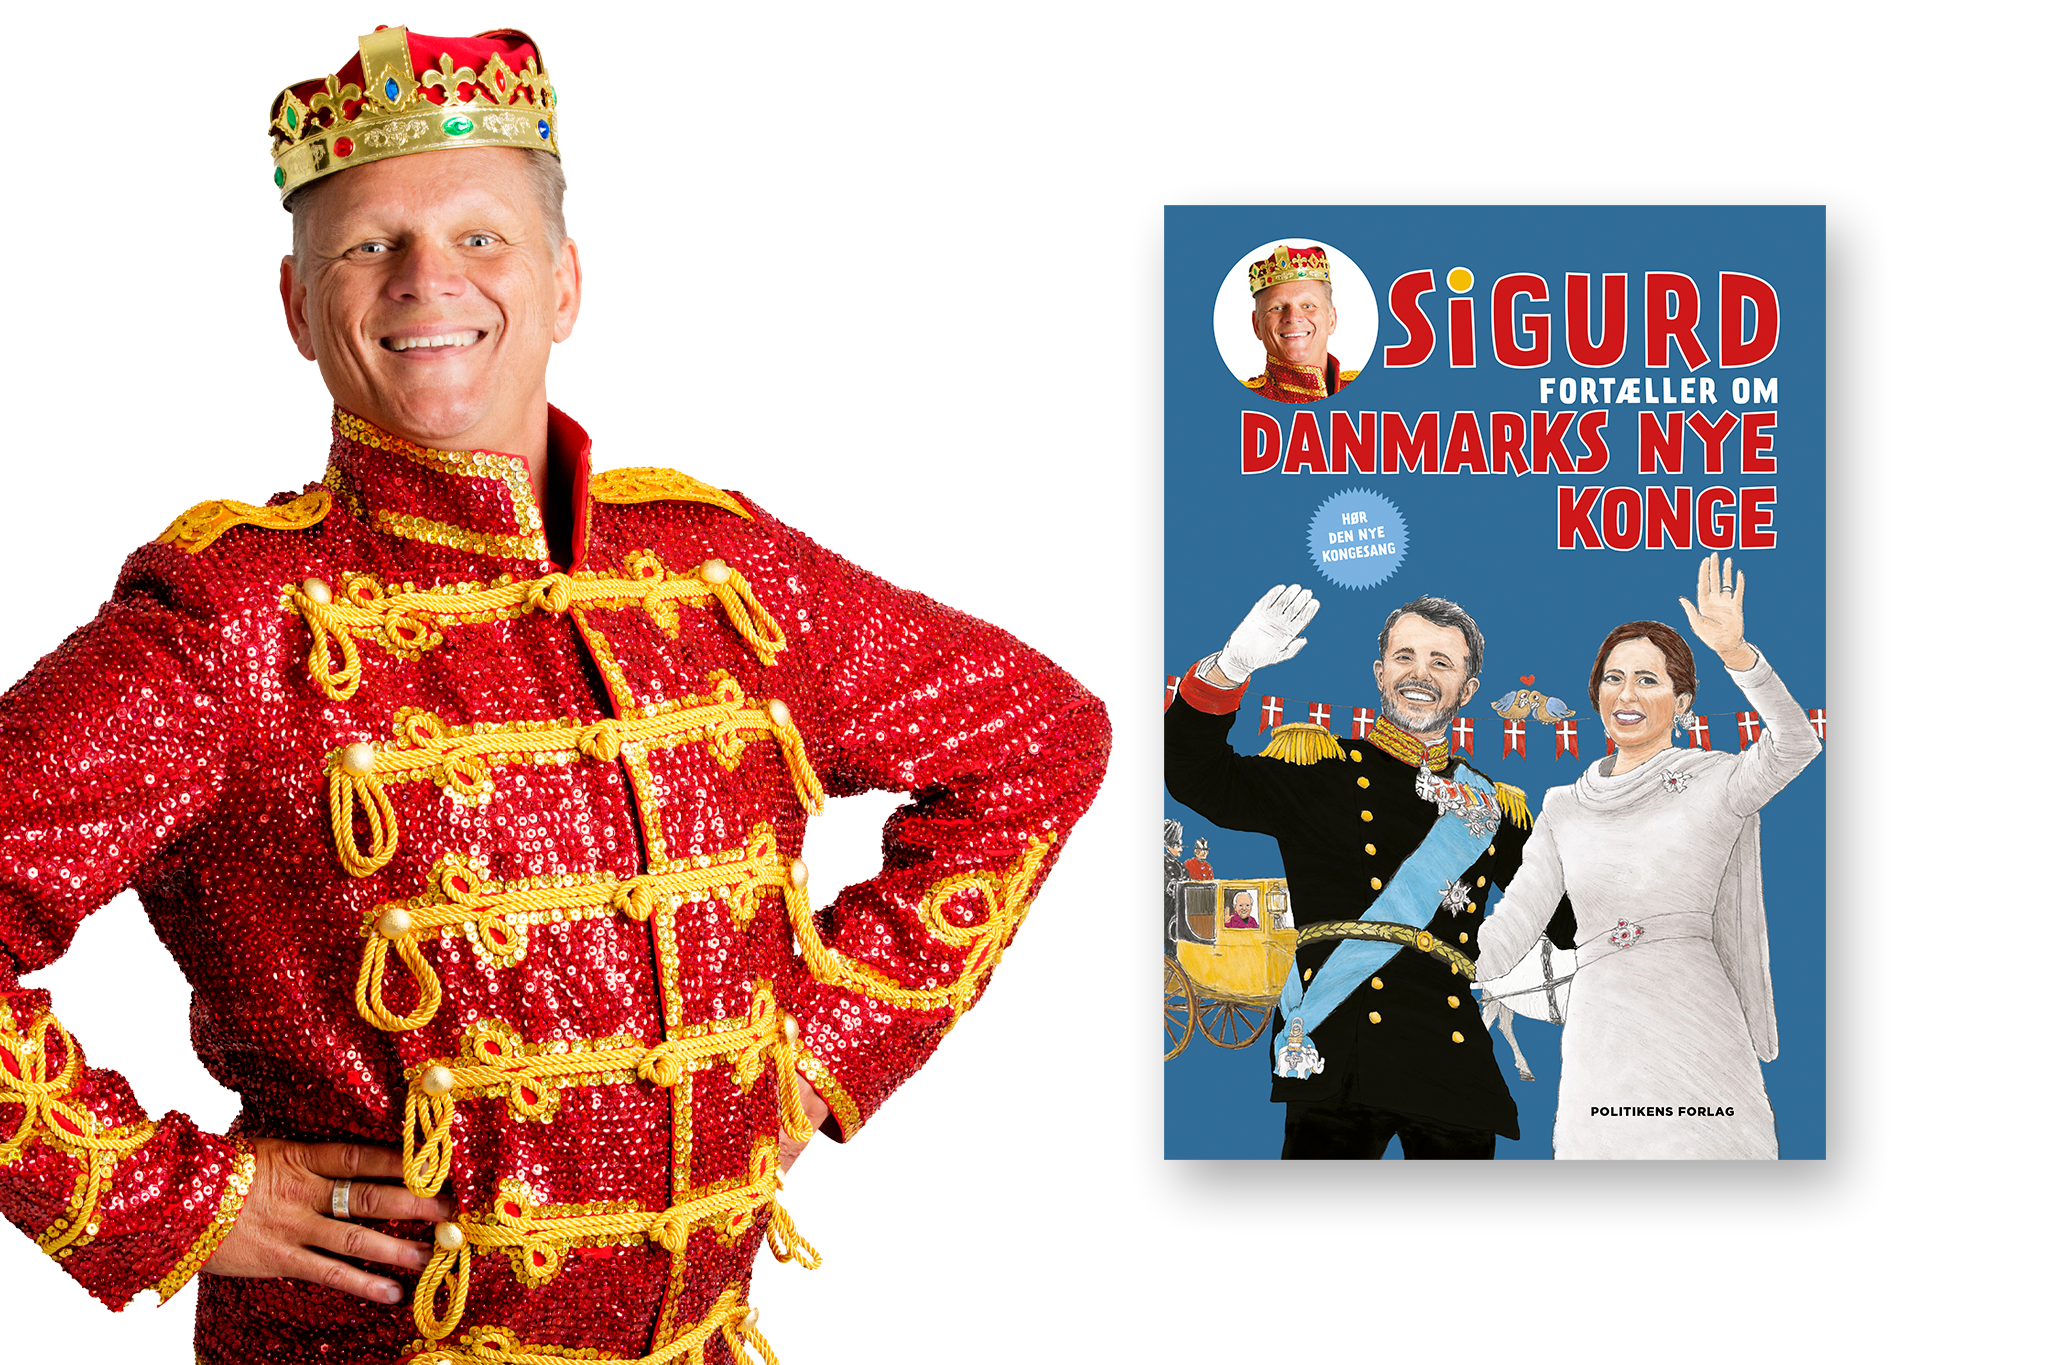 Sigurd fortaeller om Danmarks nye konge